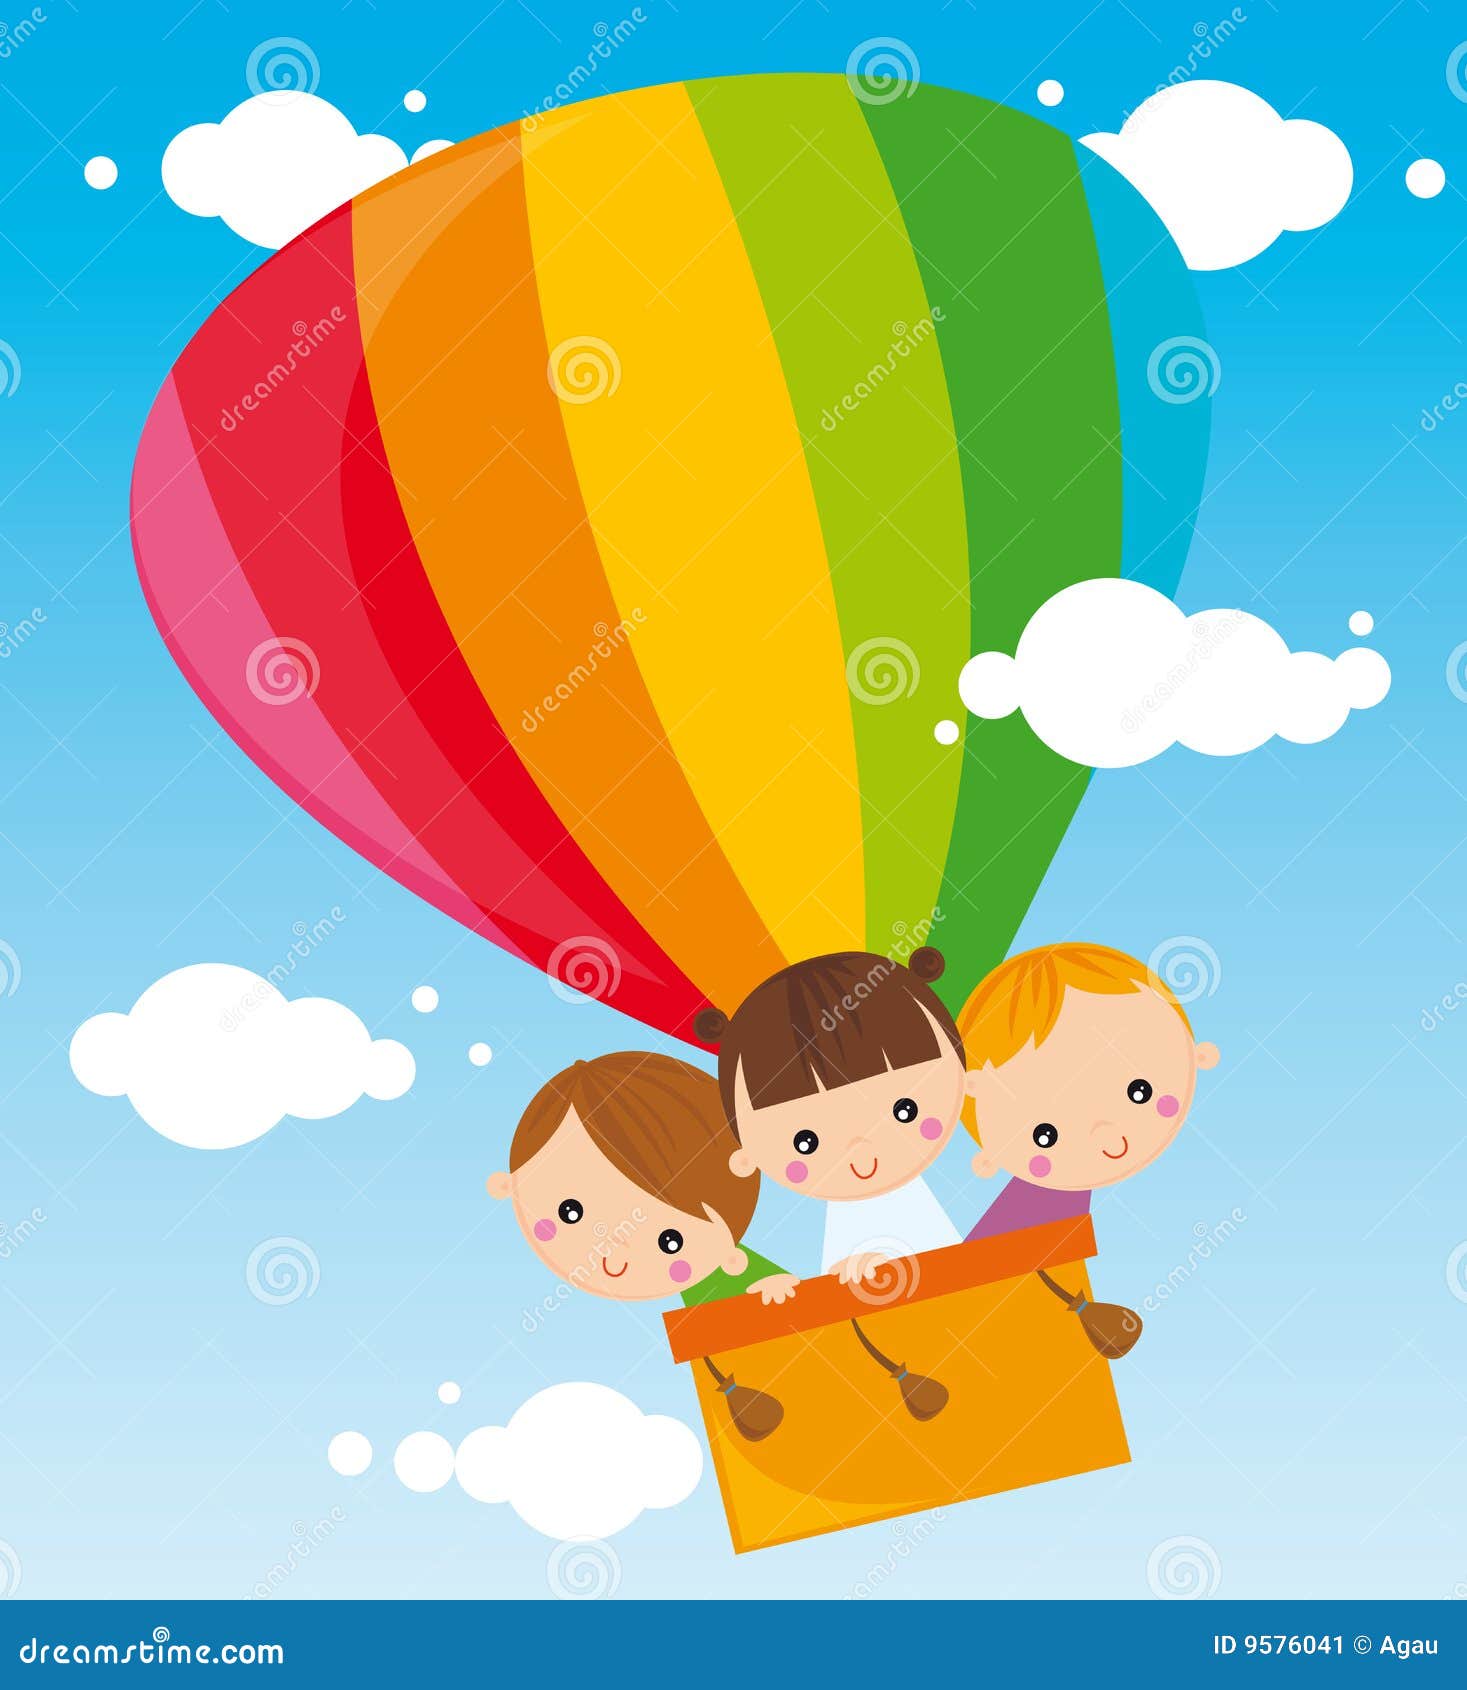 Illustration of three kids flying balloon.